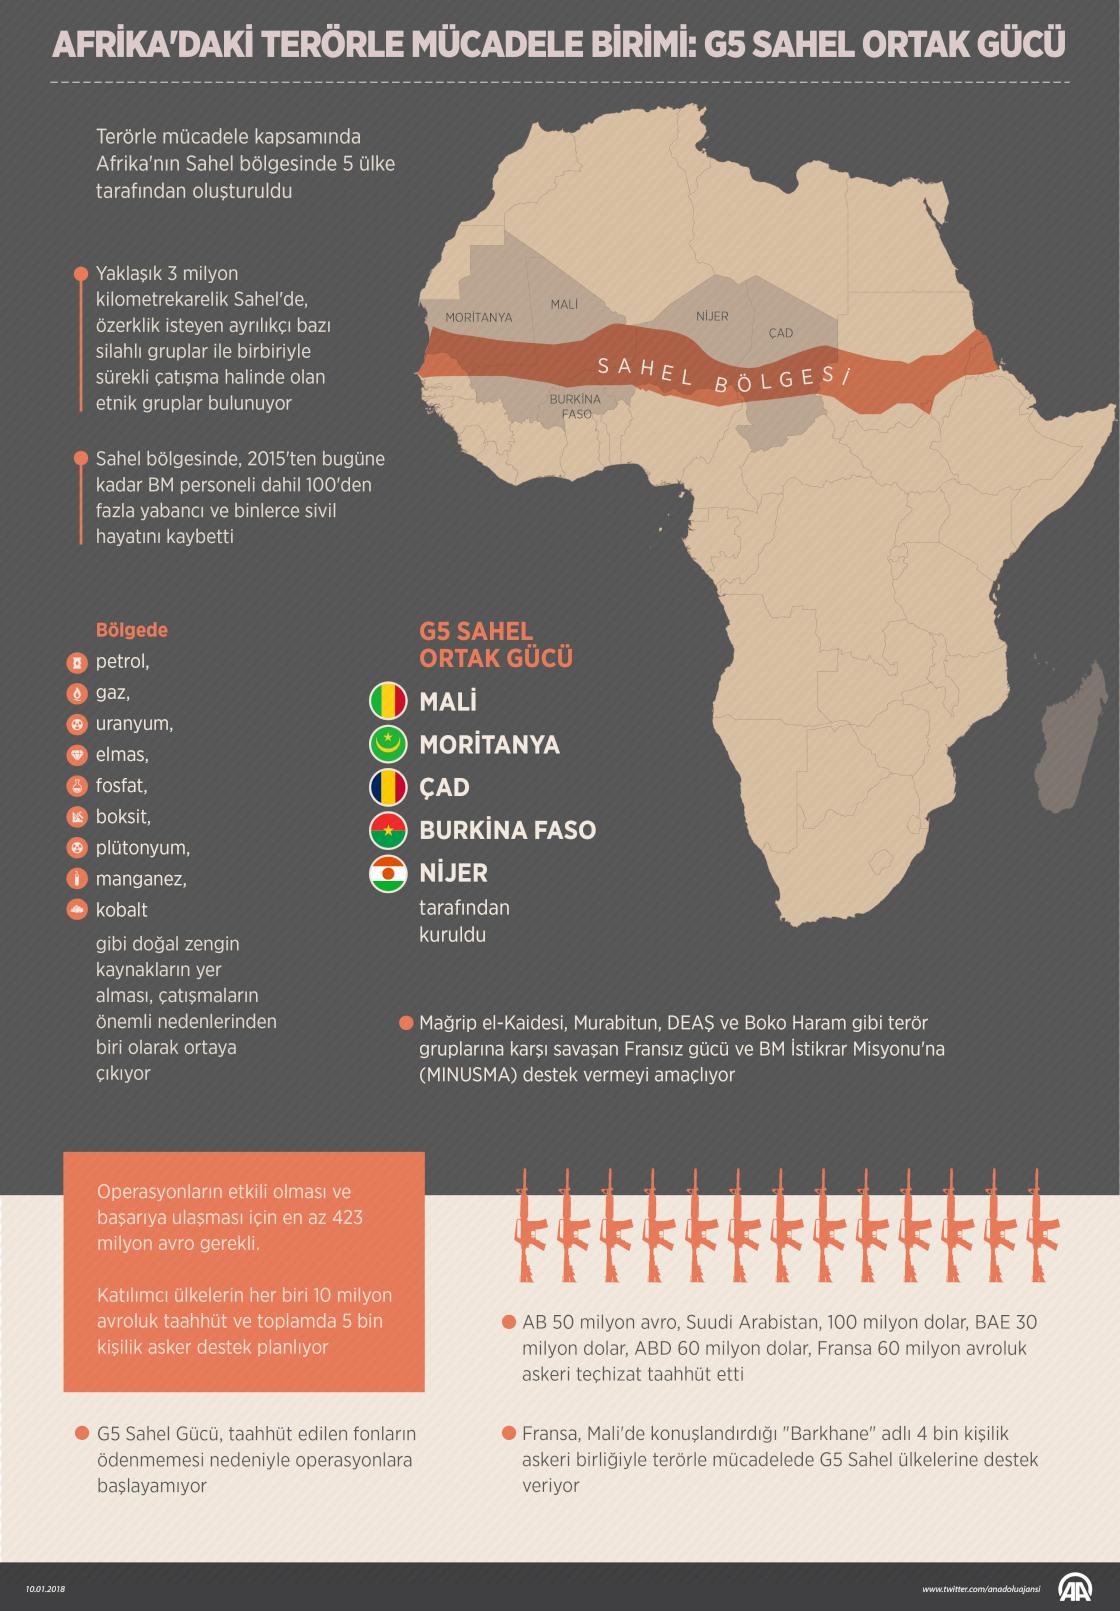 Afrika'daki terörle mücadele birimi: G5 Sahel Ortak Gücü